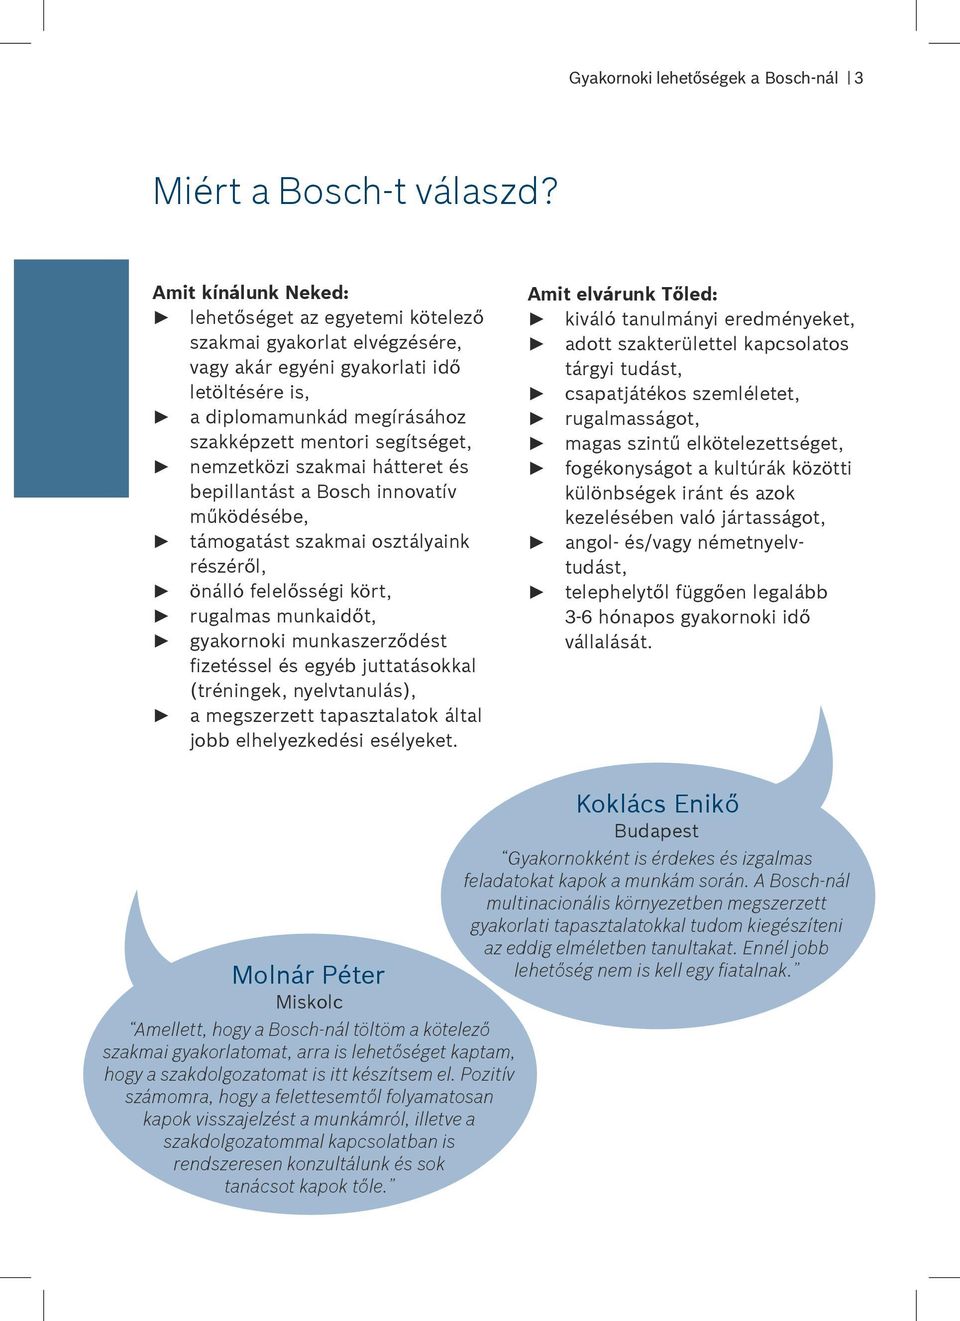 Gyakornoki lehetőségek a Bosch-nál - PDF Ingyenes letöltés